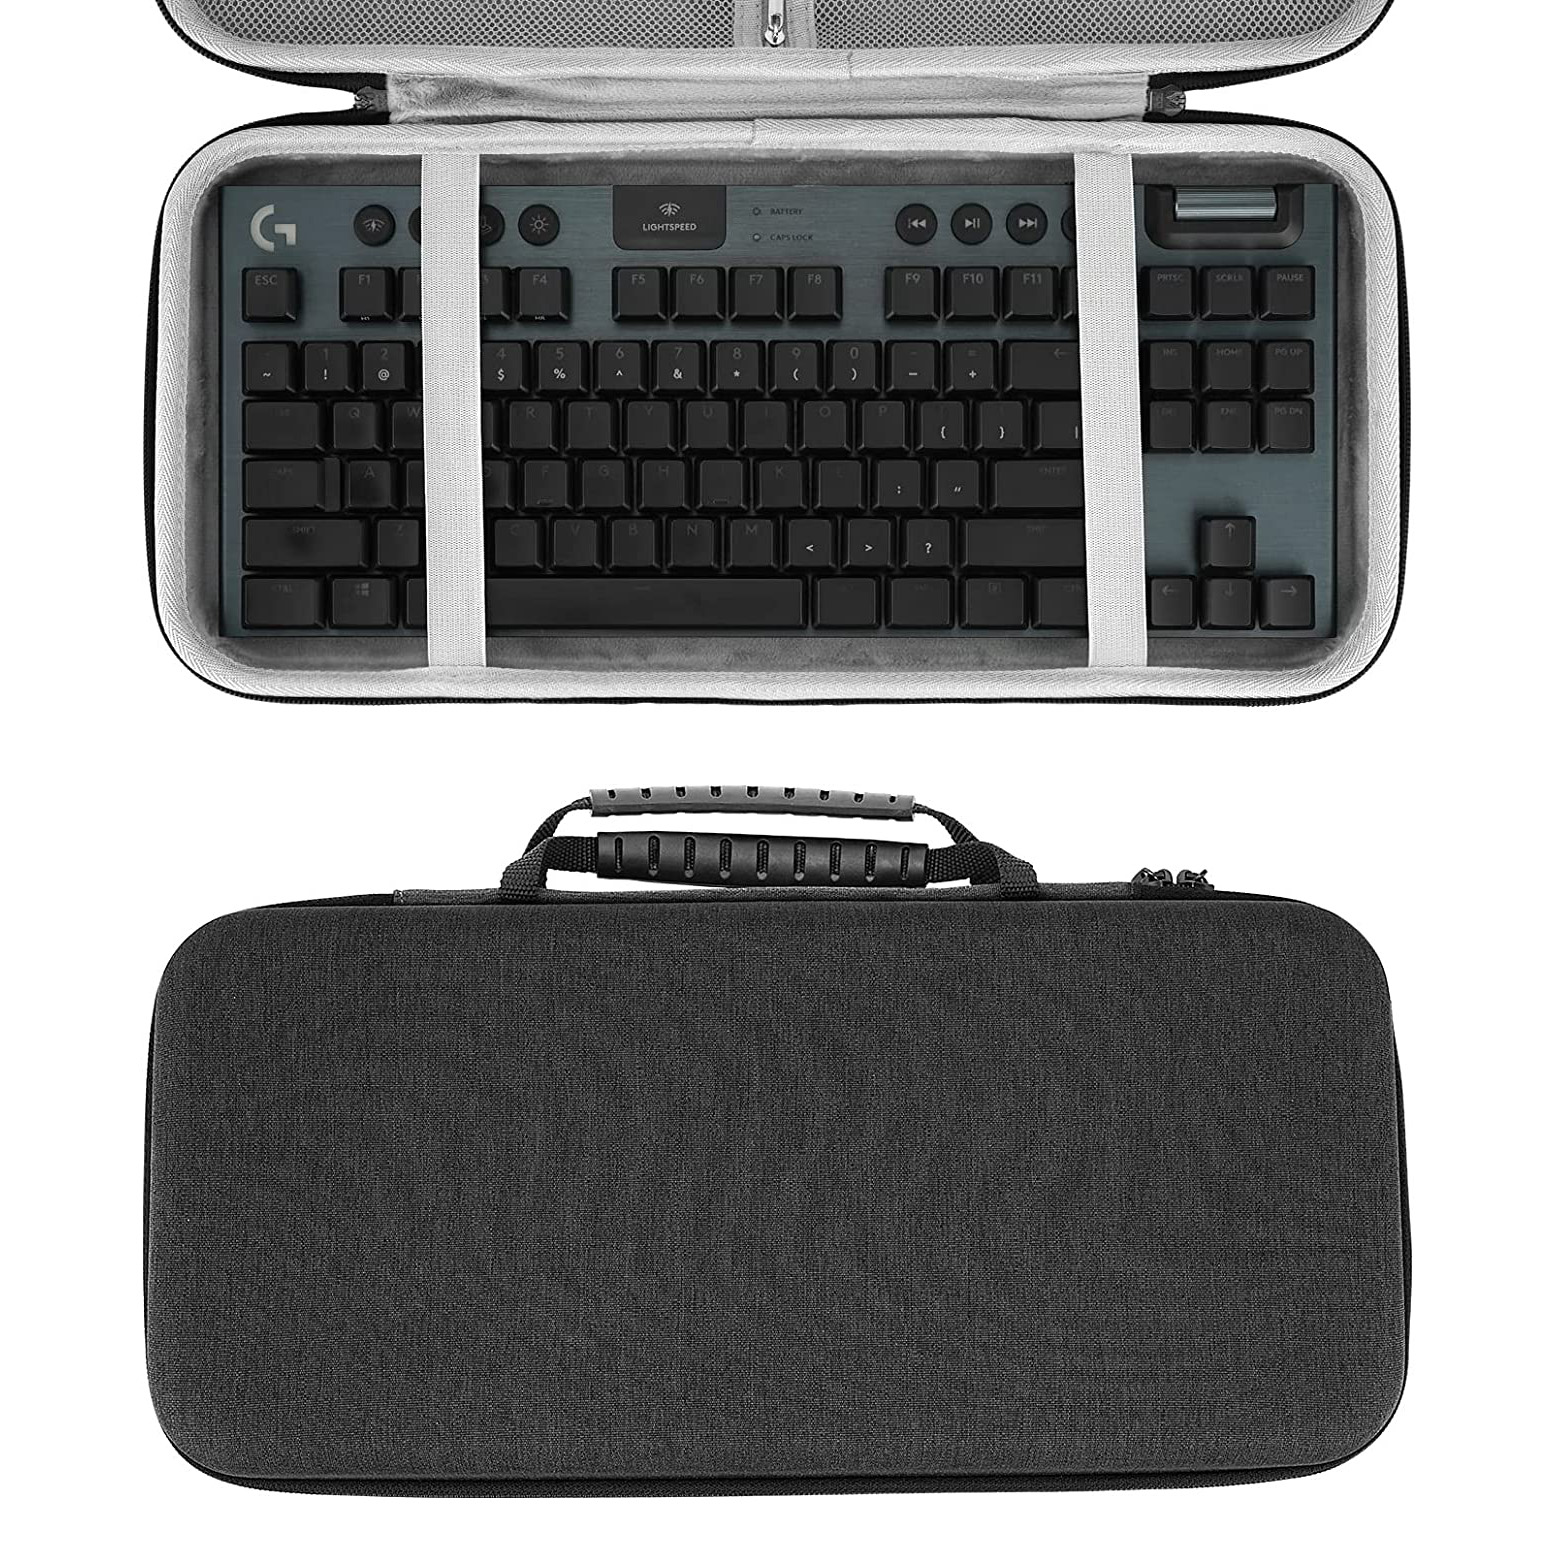 حافظة إيفا محمولة مخصصة للوحة المفاتيح الميكانيكية 61 مفتاح حقيبة لوحة المفاتيح الصلبة إيفا